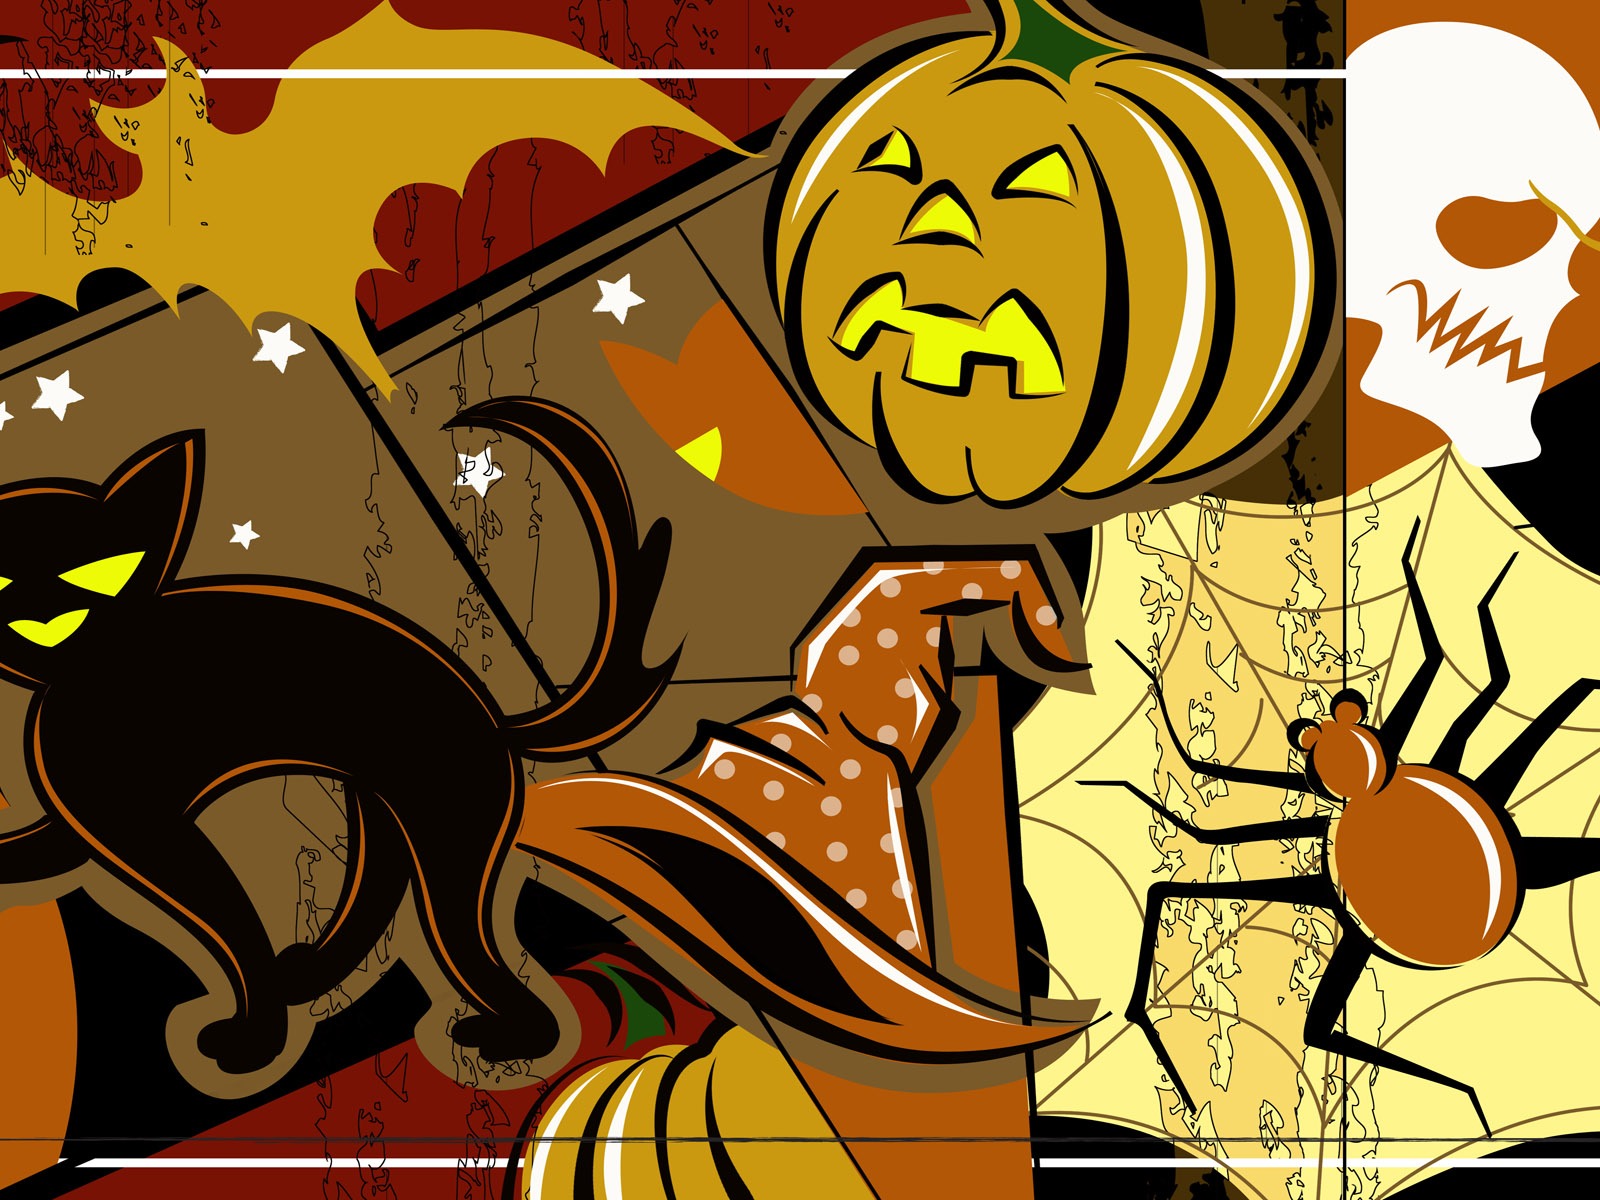 Fondos de Halloween temáticos (4) #13 - 1600x1200